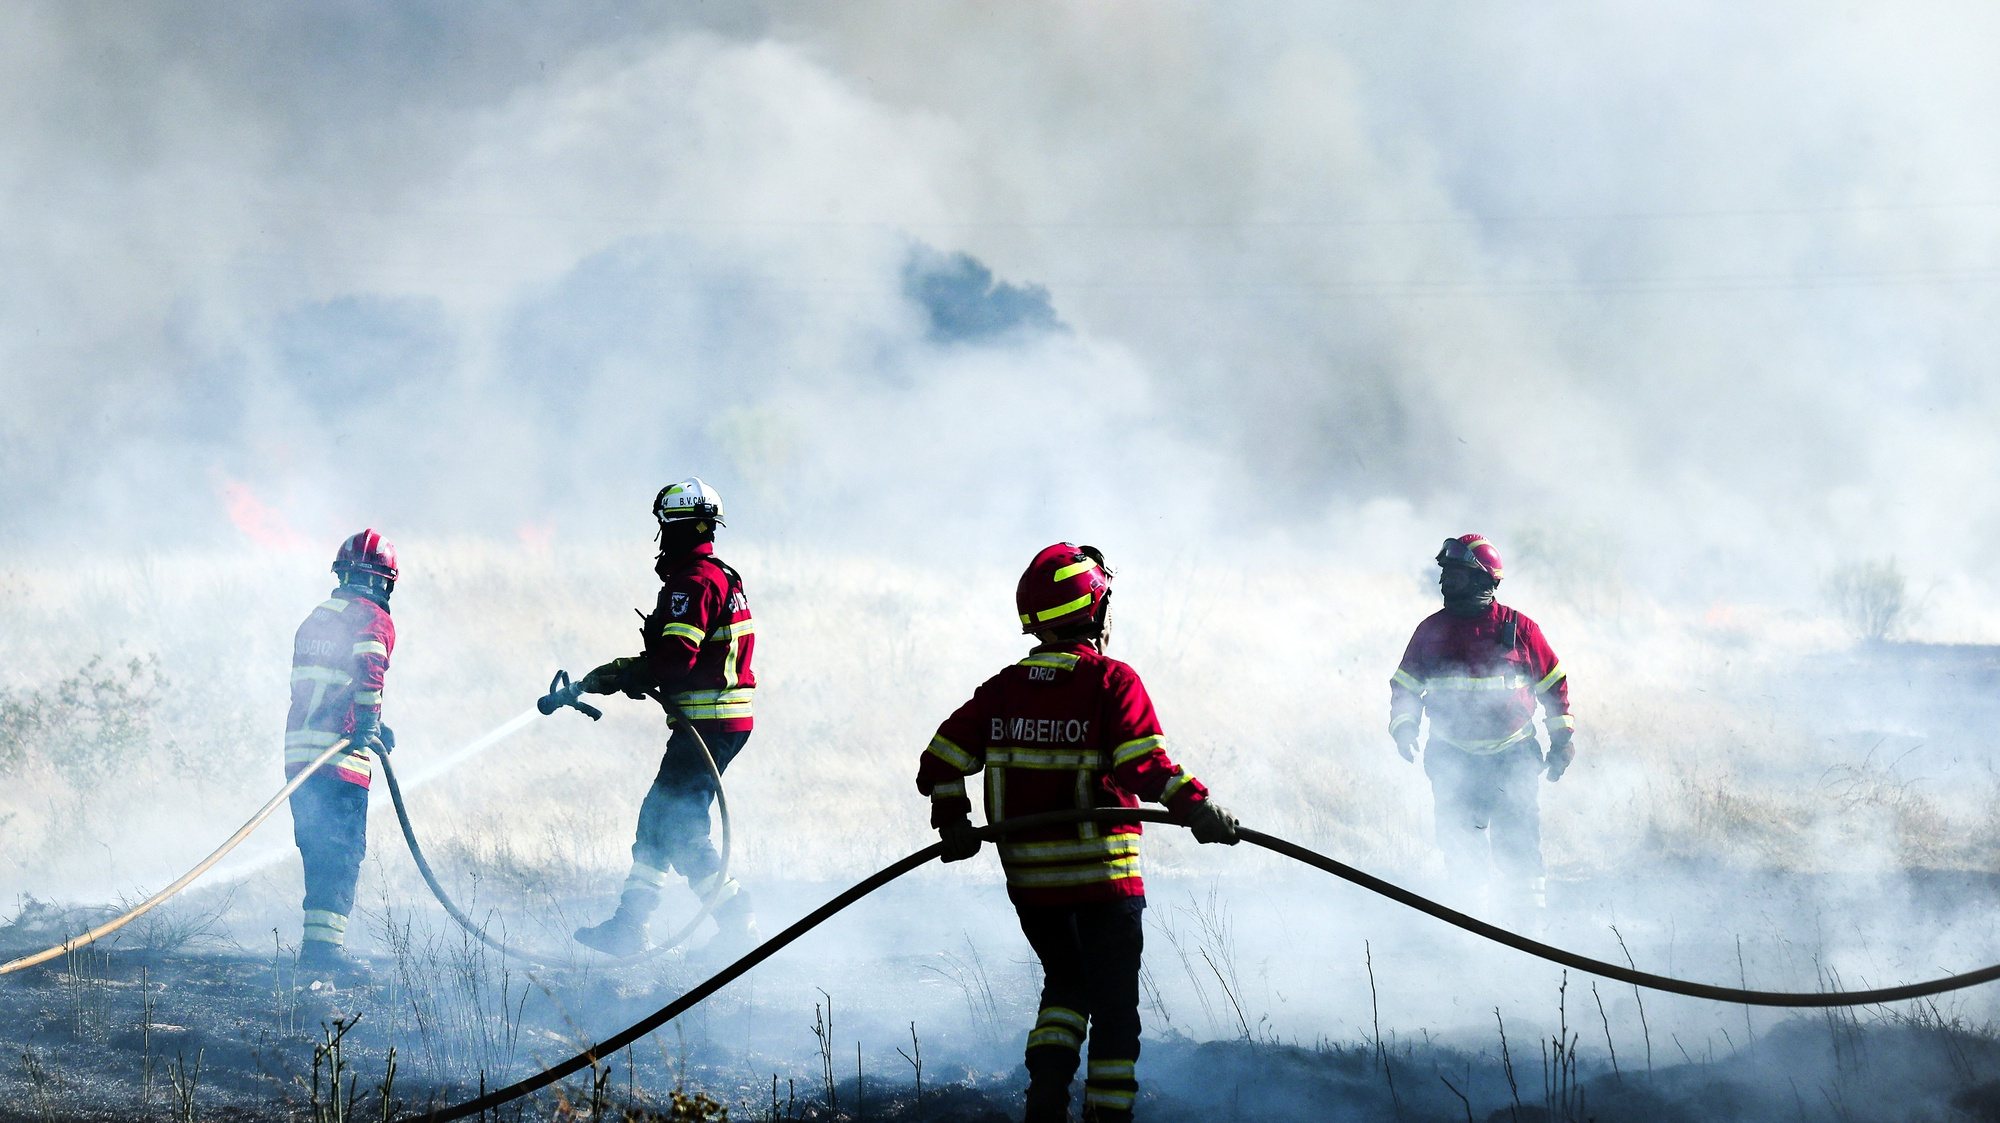 Elementos de várias corporações de bombeiros voluntários combatem um incêndio numa mata da freguesia de Vila Boim, Elvas, 28 de julho de 2021. Segundo a Autoridade Nacional de Emergência e Proteção Civil estão envolvidos no combate ao incêndio 155 bombeiros, 45 meios terrestres, e 5 meios aéreos. NUNO VEIGA/LUSA